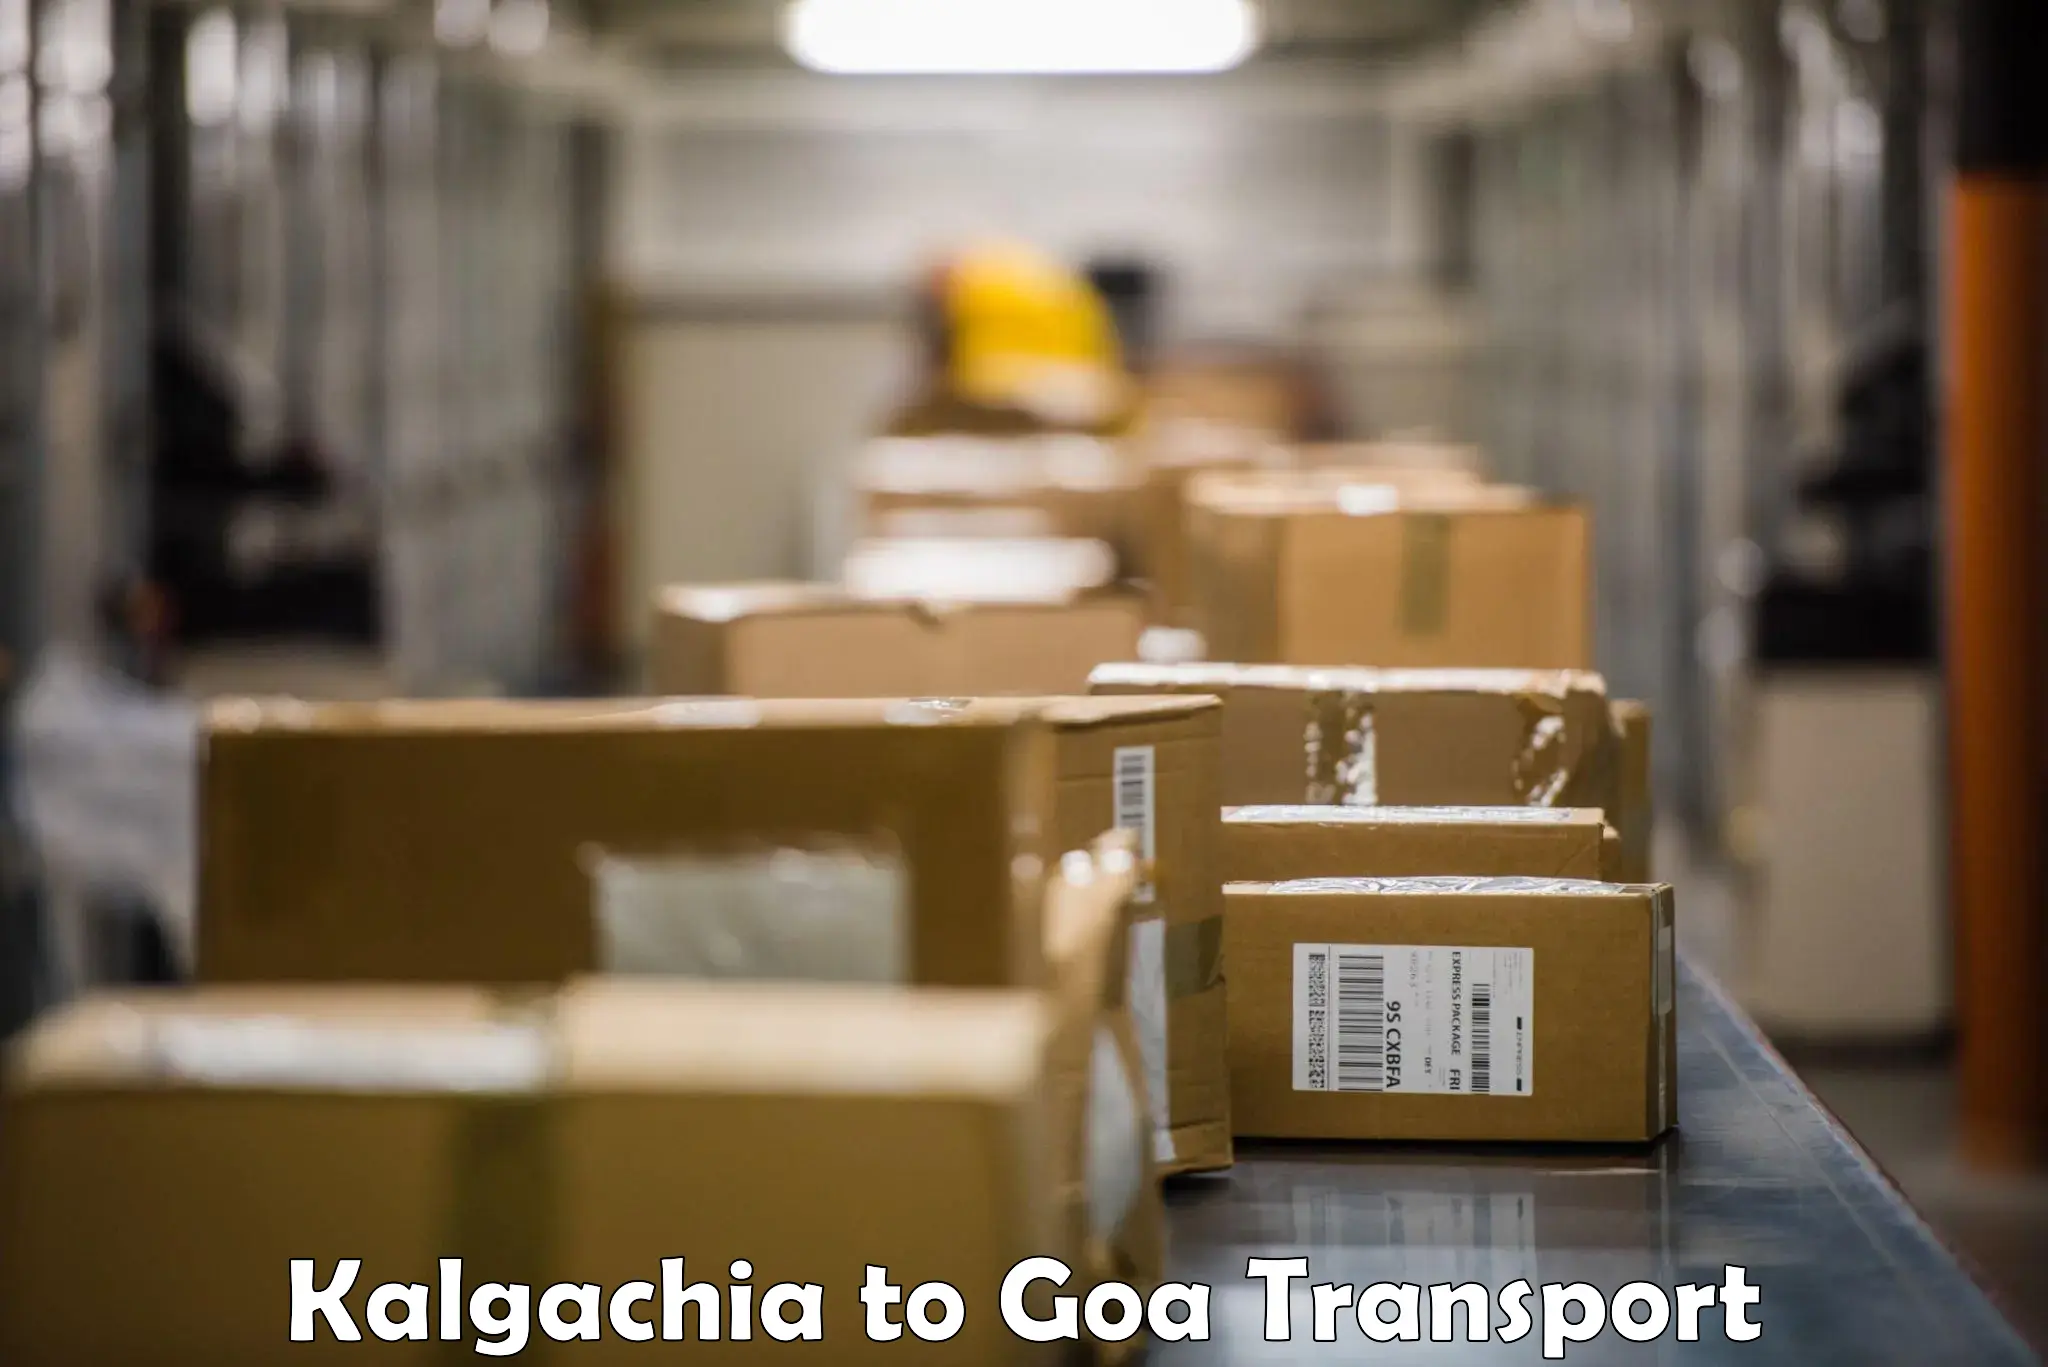 Bike transport service Kalgachia to Goa